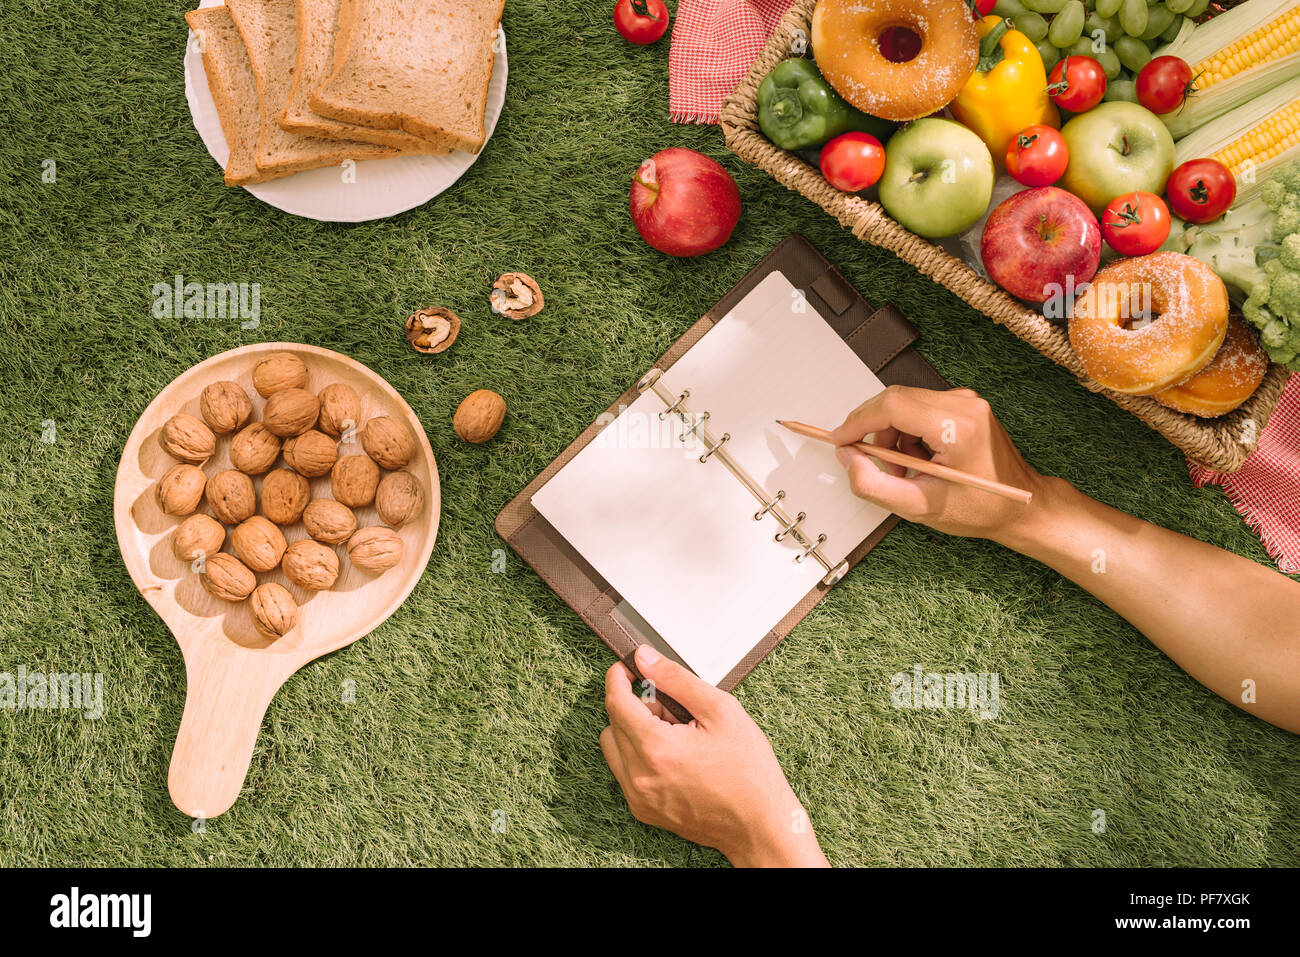 Picknick Weidenkorb mit Essen, Brot, Obst und Orangensaft auf einer rot-weiß karierten Tuch in das Feld mit der grünen Natur Hintergrund. Picknick conce Stockfoto